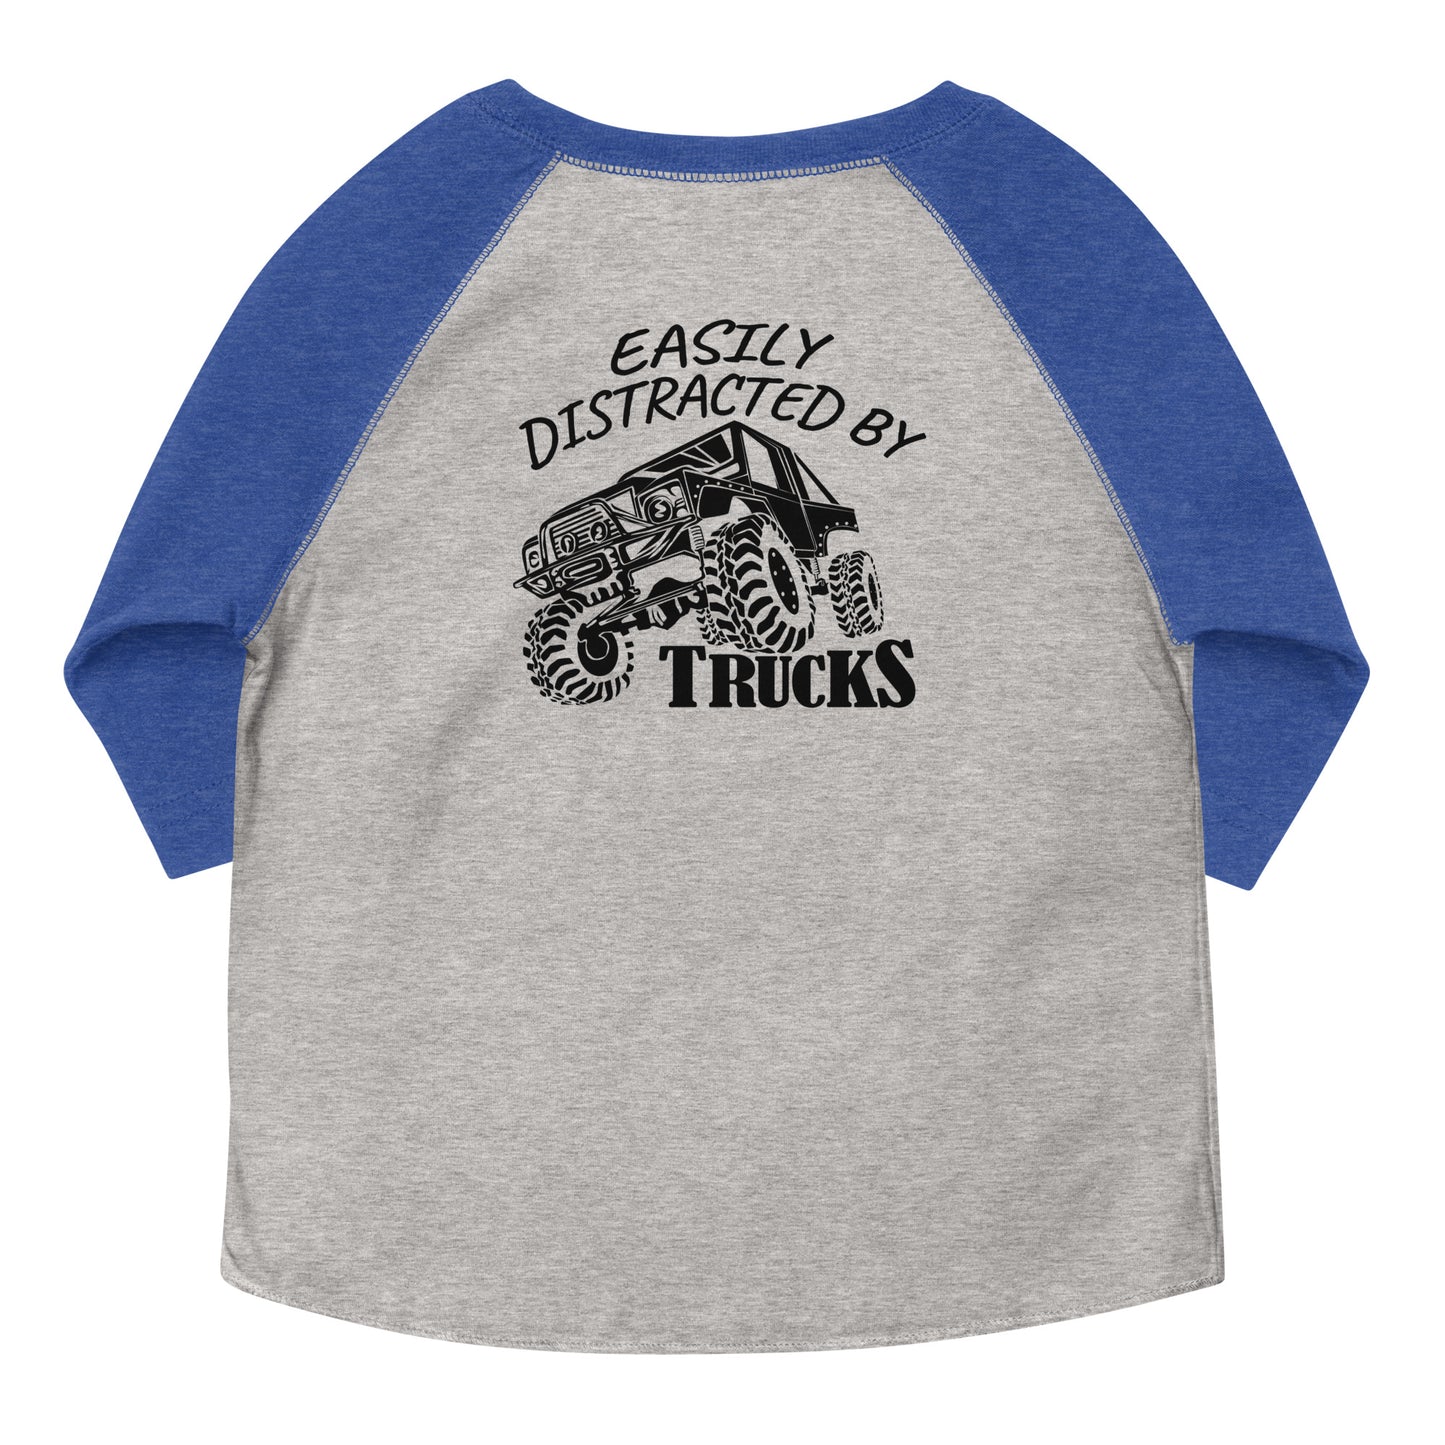 Toddler baseball shirt